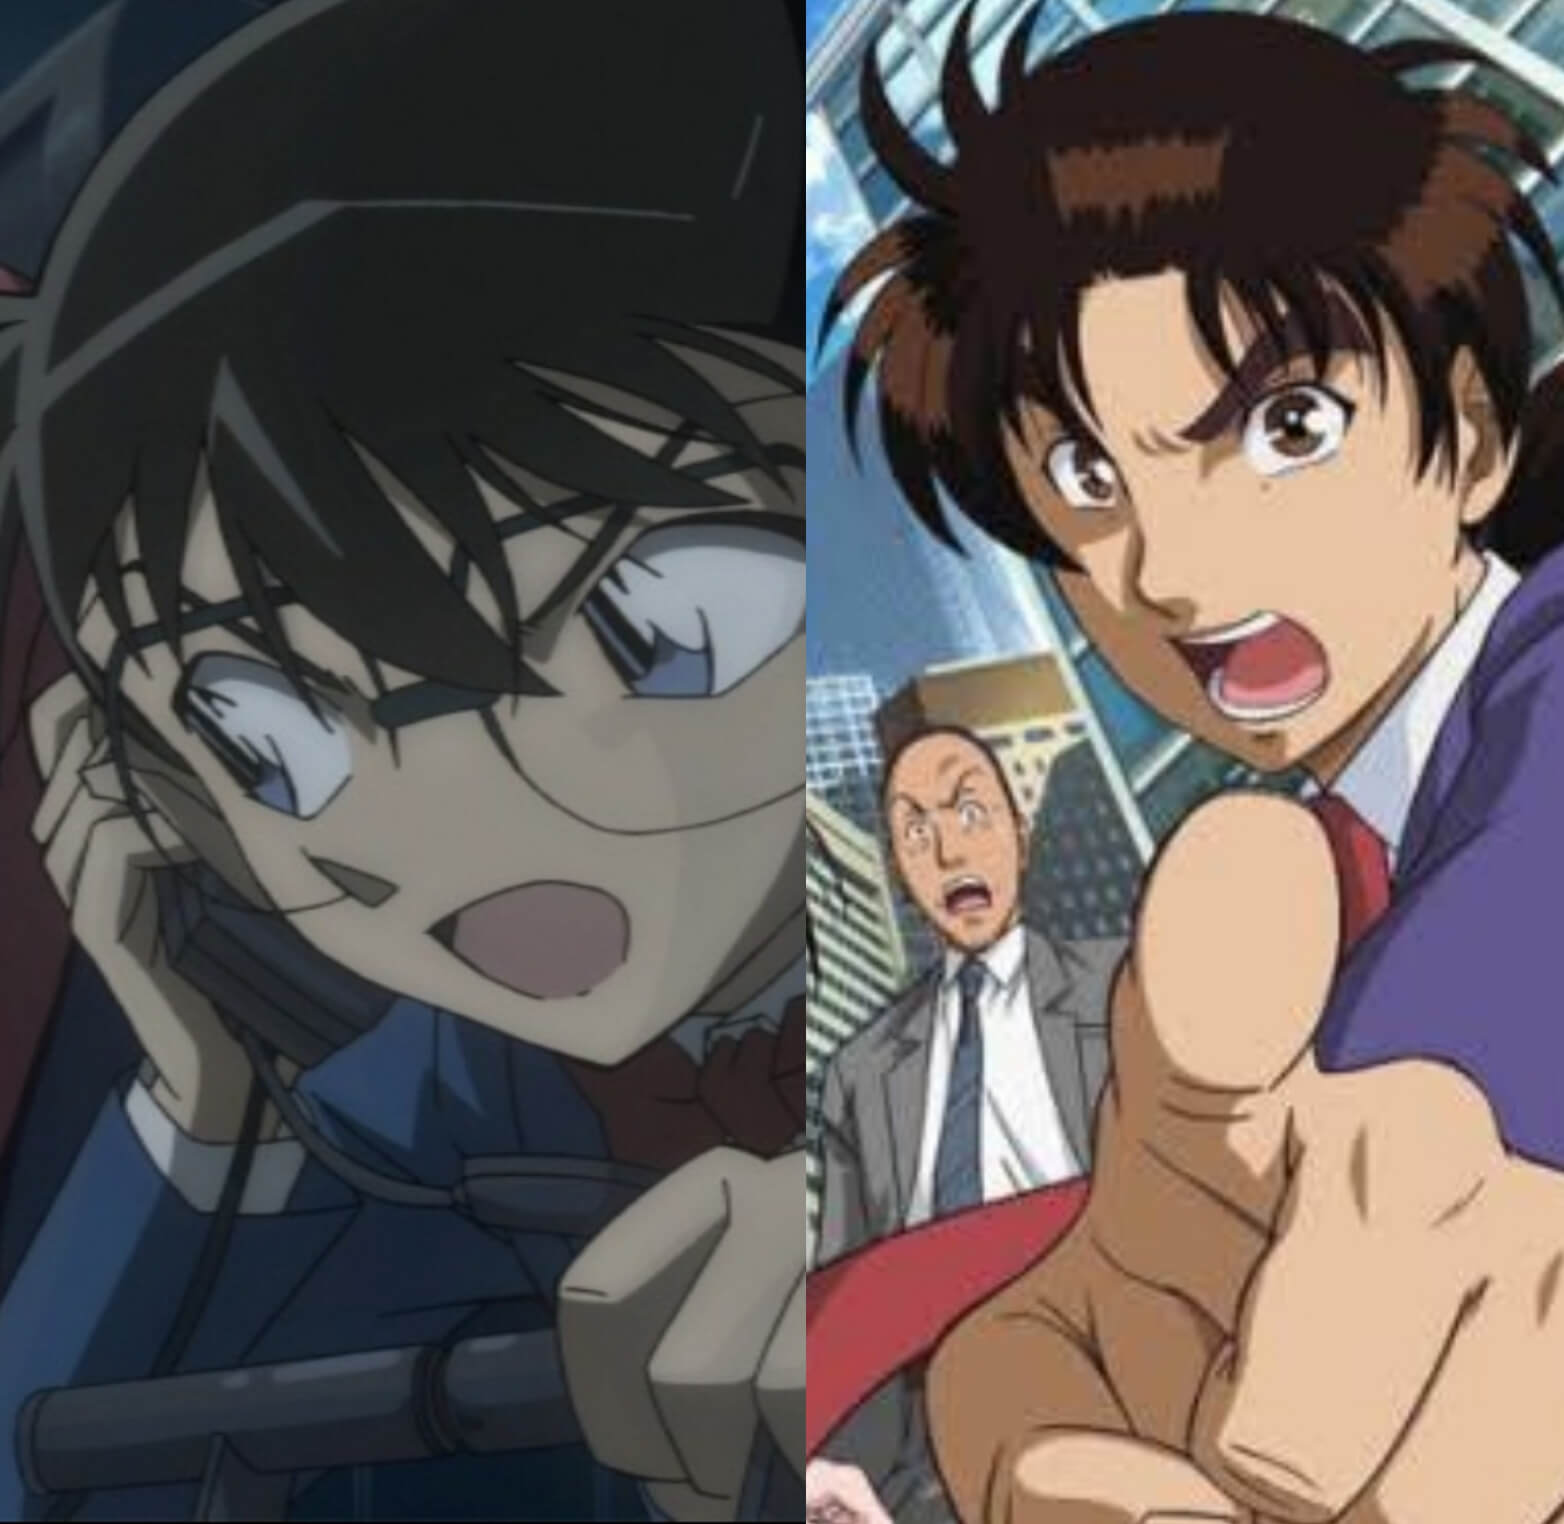 Conan dan kindaichi Bersaing Ketat Menjadi Manga serta Anime Populer di Genre Detektif